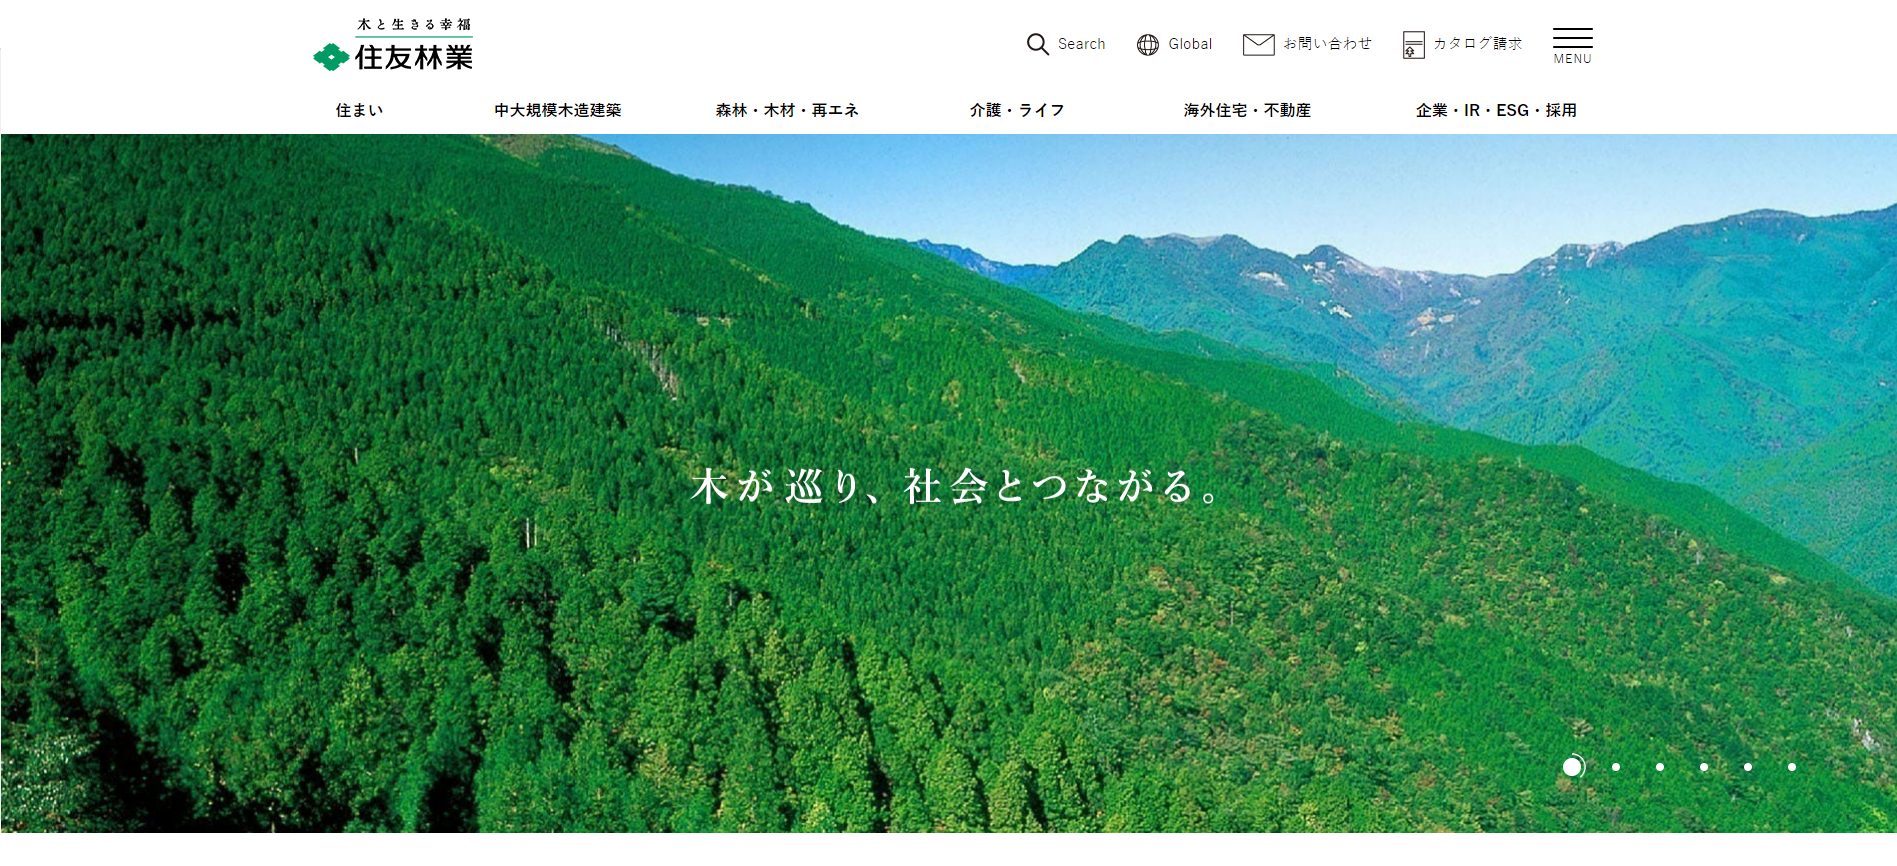 住友林業公式サイトの画像